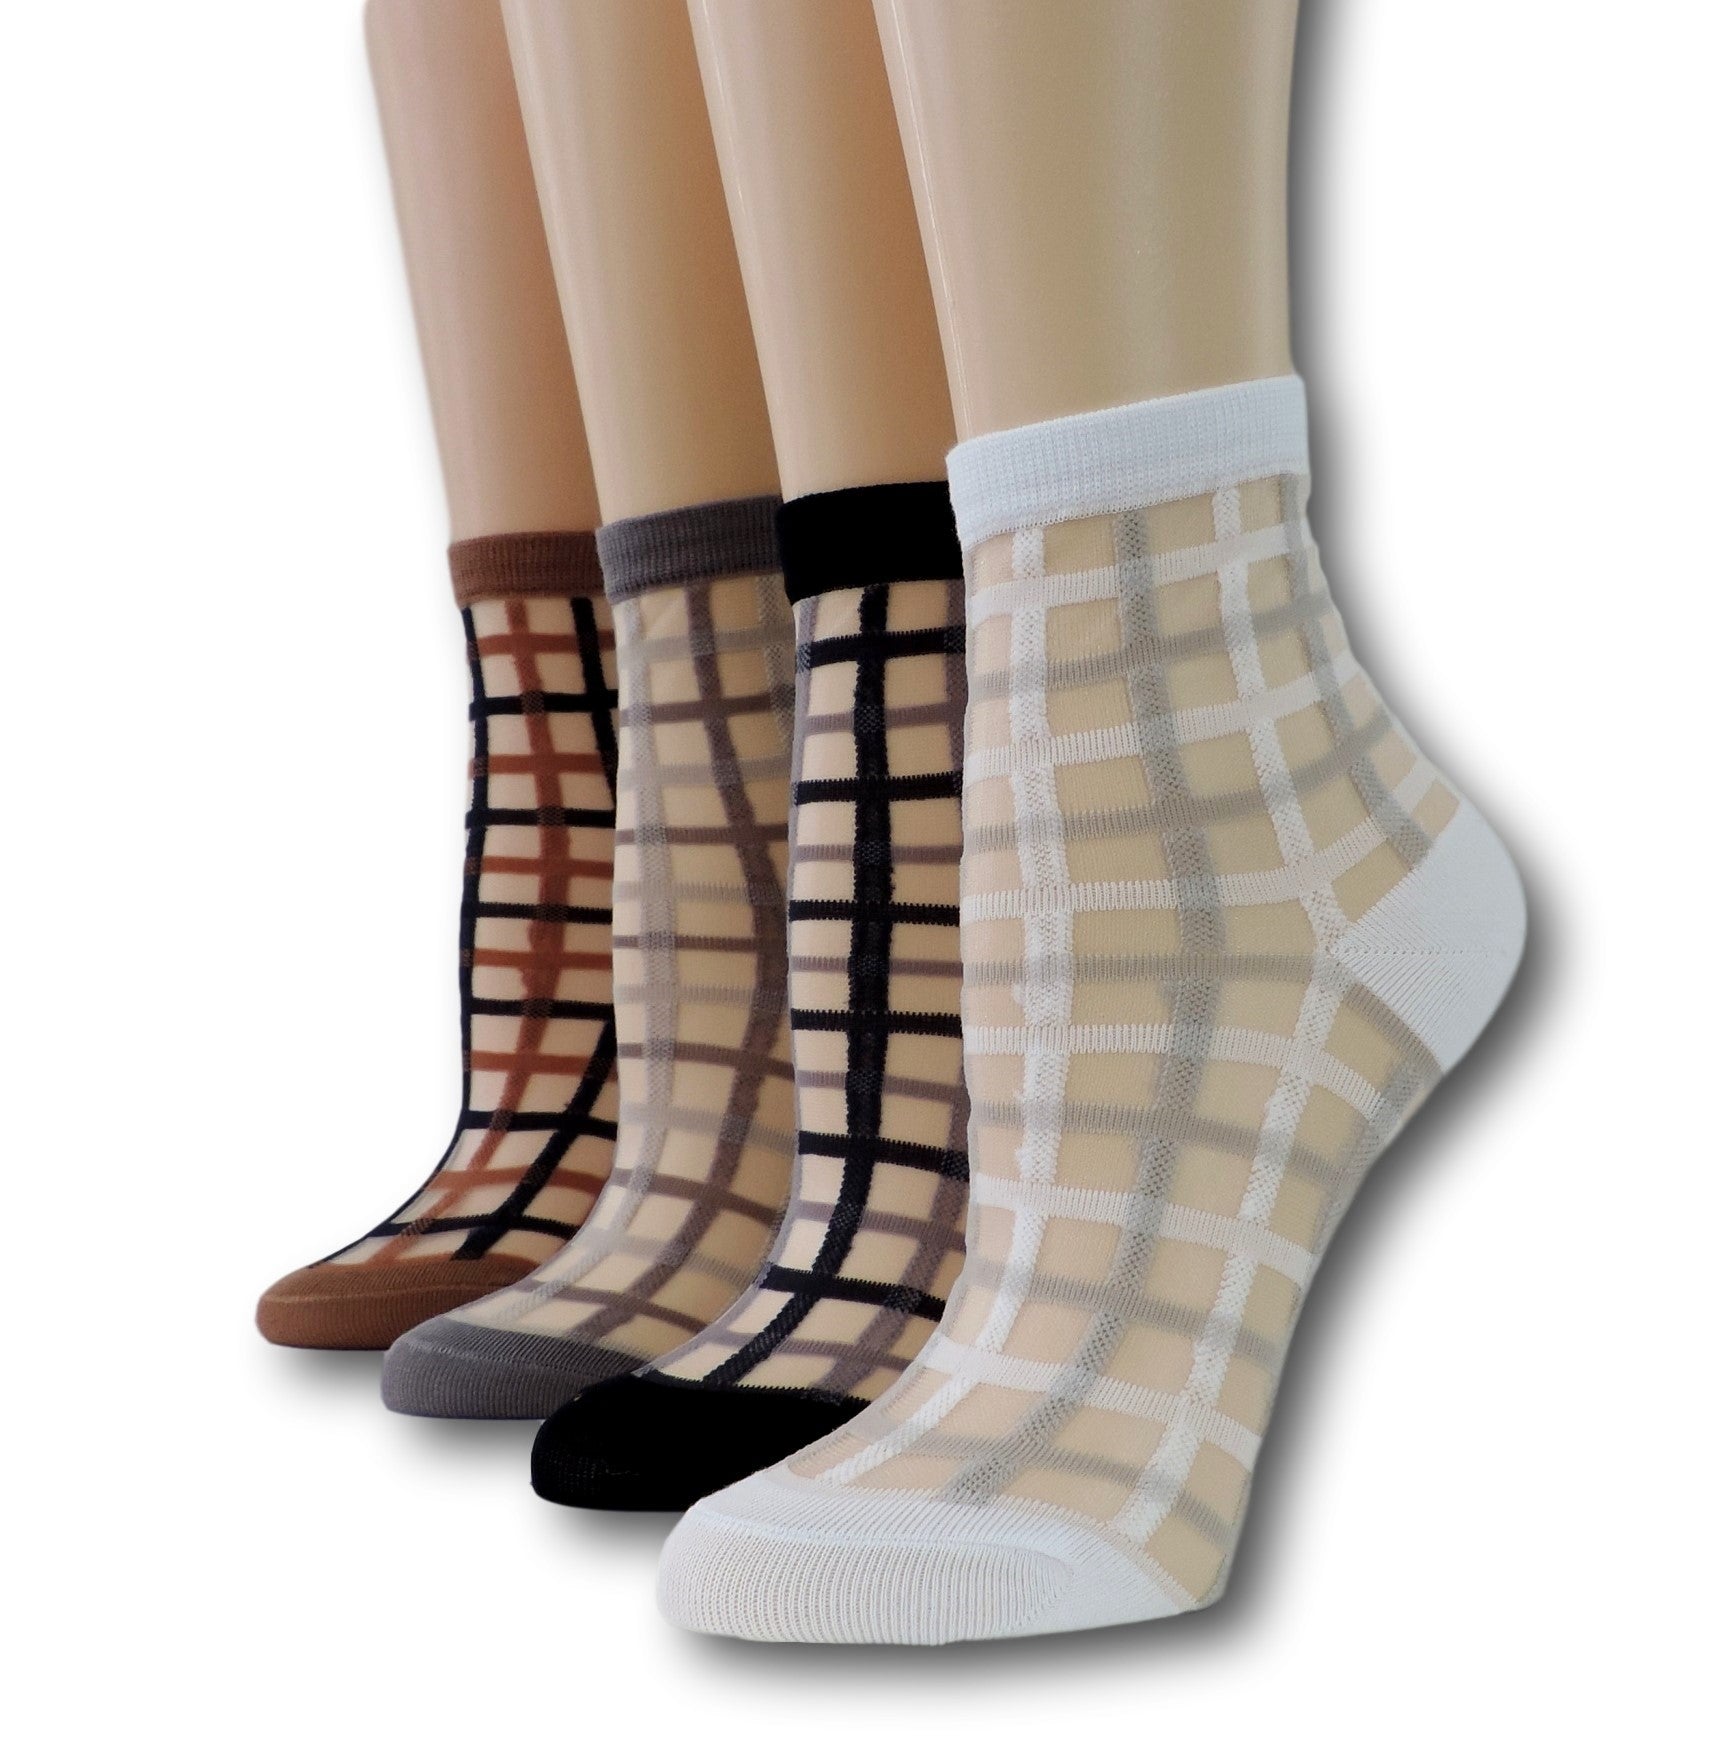 Vintage Sheer Socks (Pack of 4 Pairs)